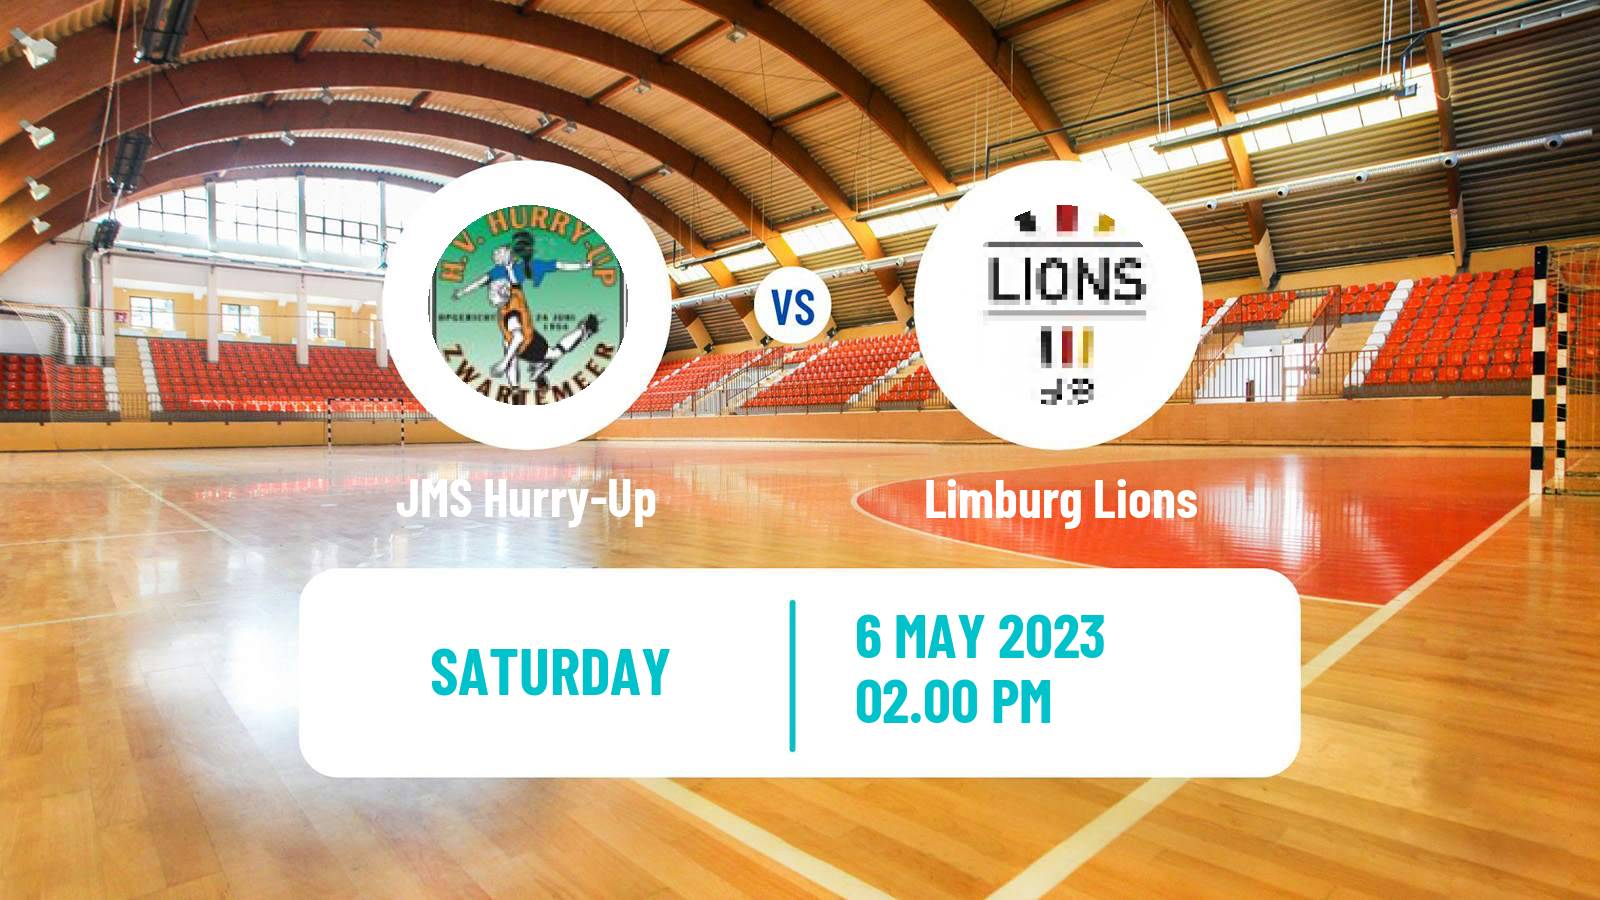 Handball Dutch Handbalnl League Hurry-Up - Limburg Lions